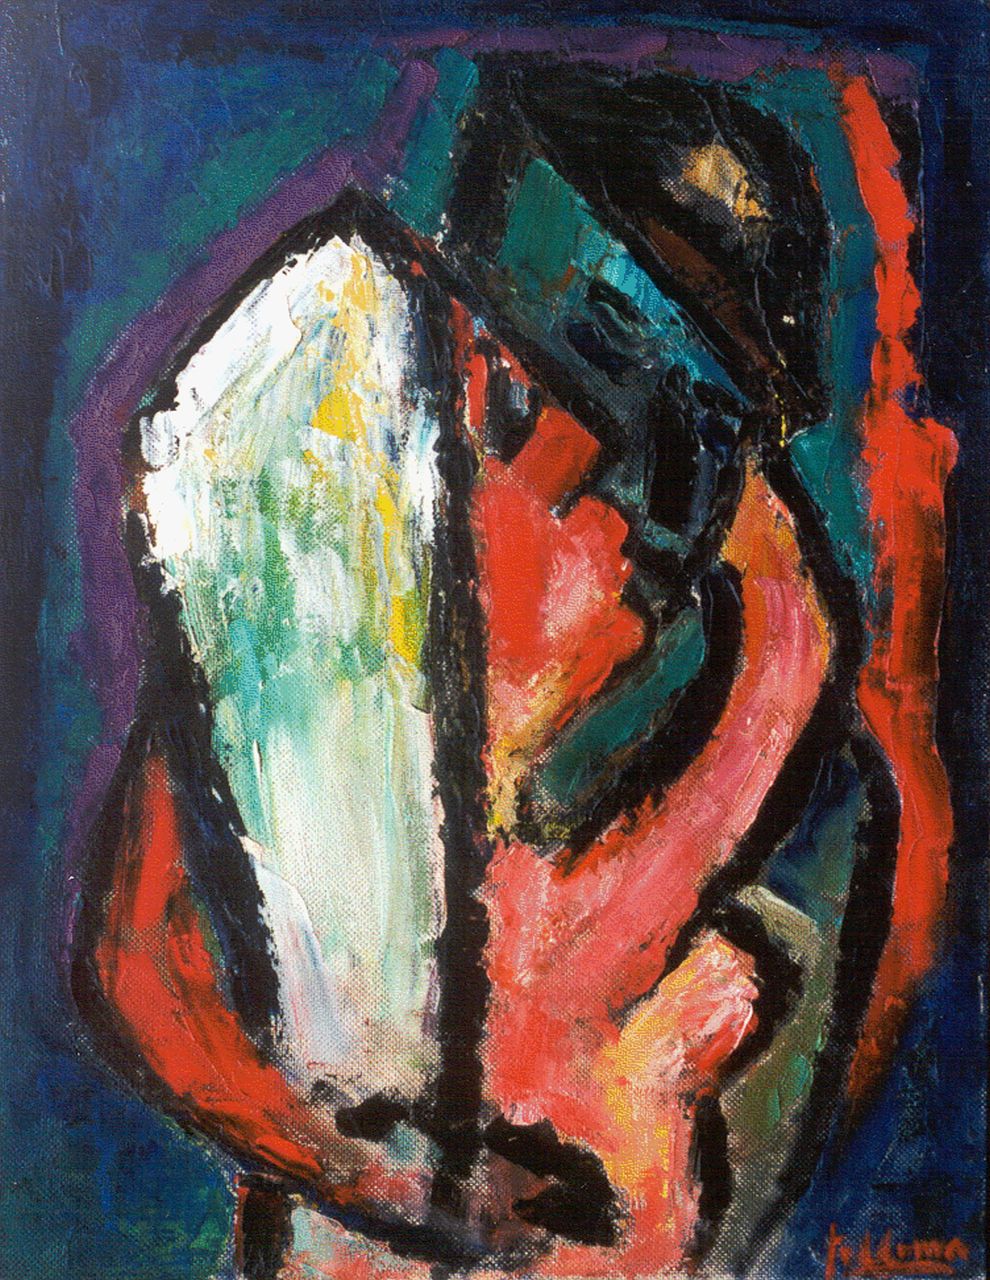 Pier Feddema | A fond embrace, Öl auf Leinwand Malereifaser, 65,0 x 50,0 cm, signed l.r.